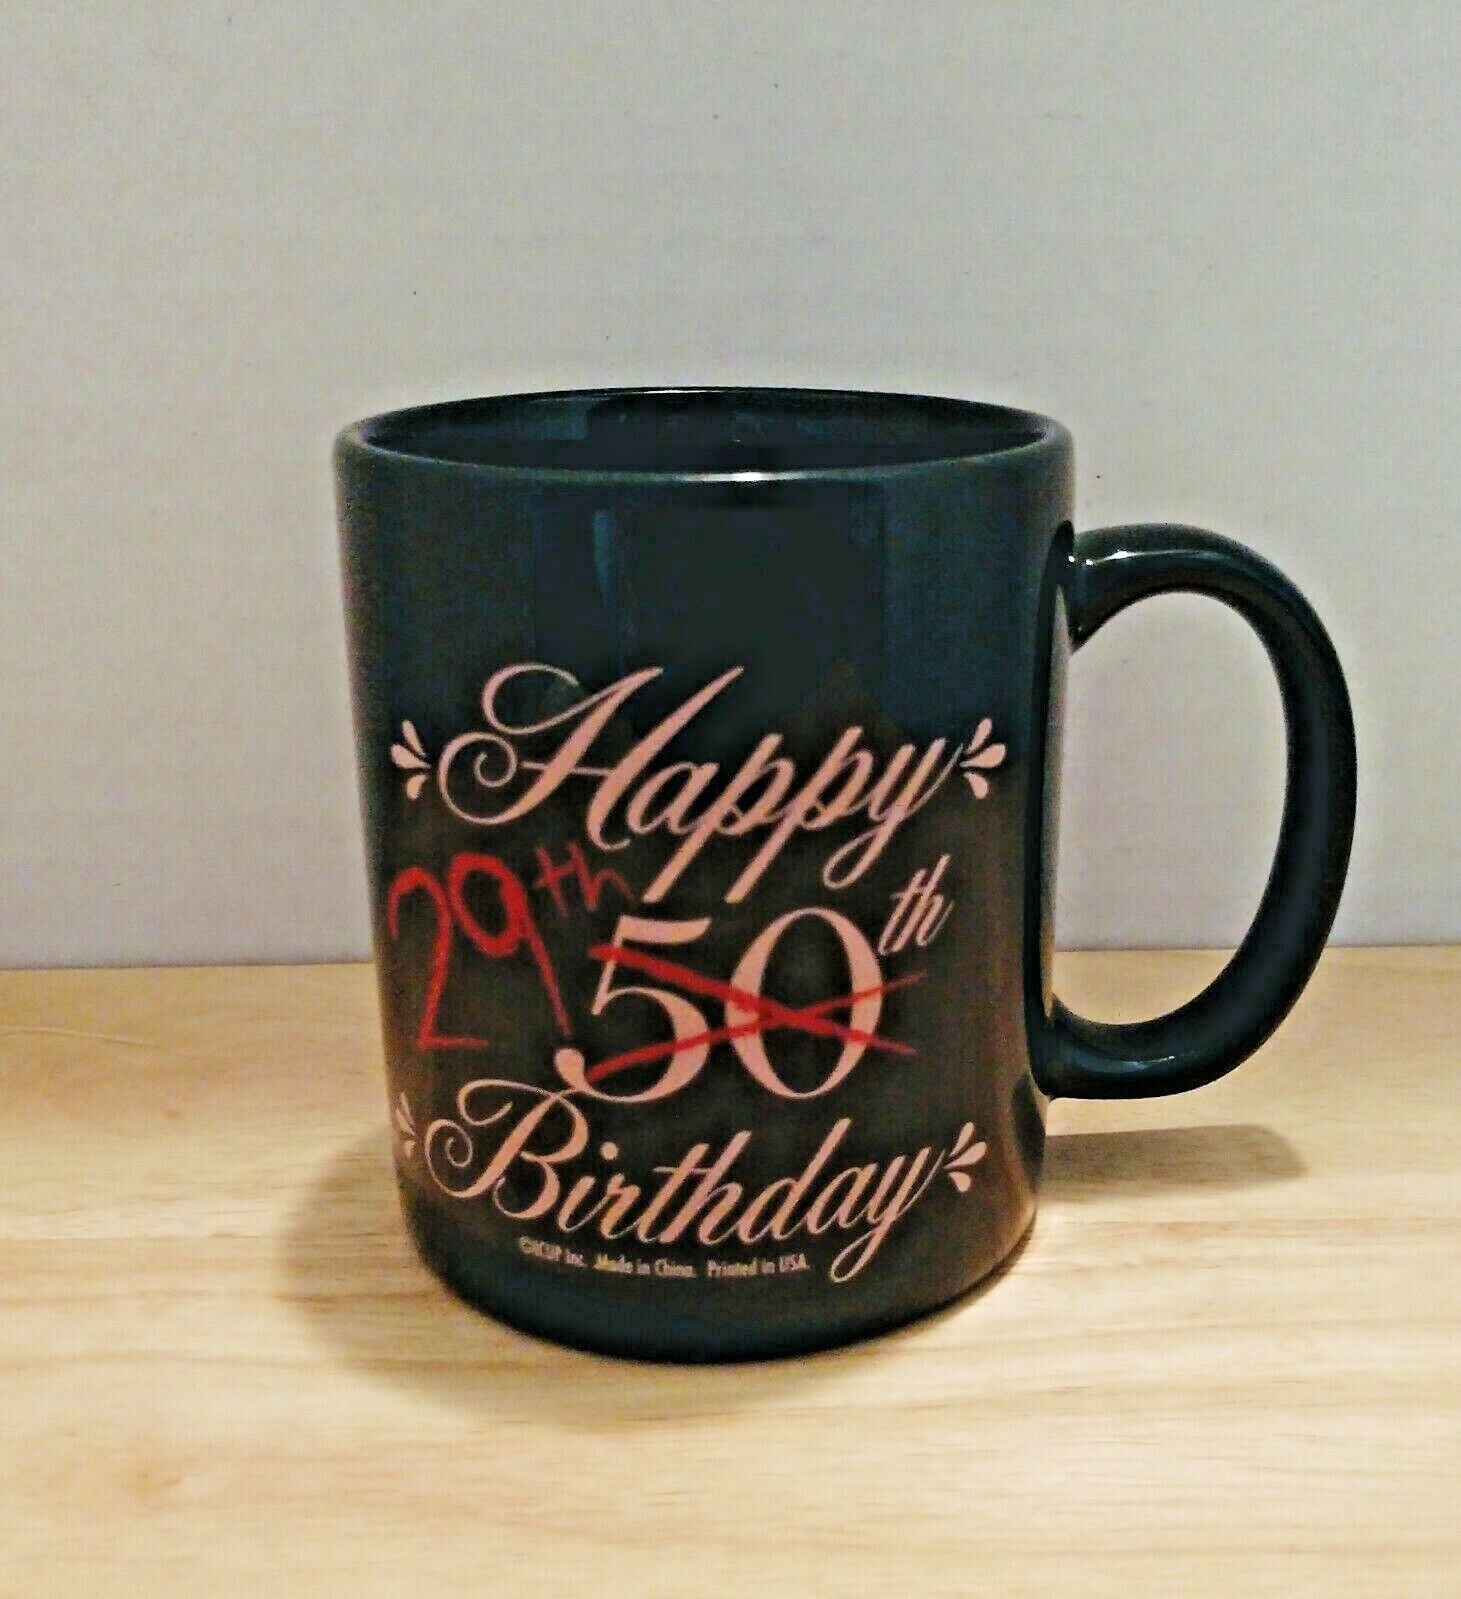 Happy 50th(29th) Birthday Mug